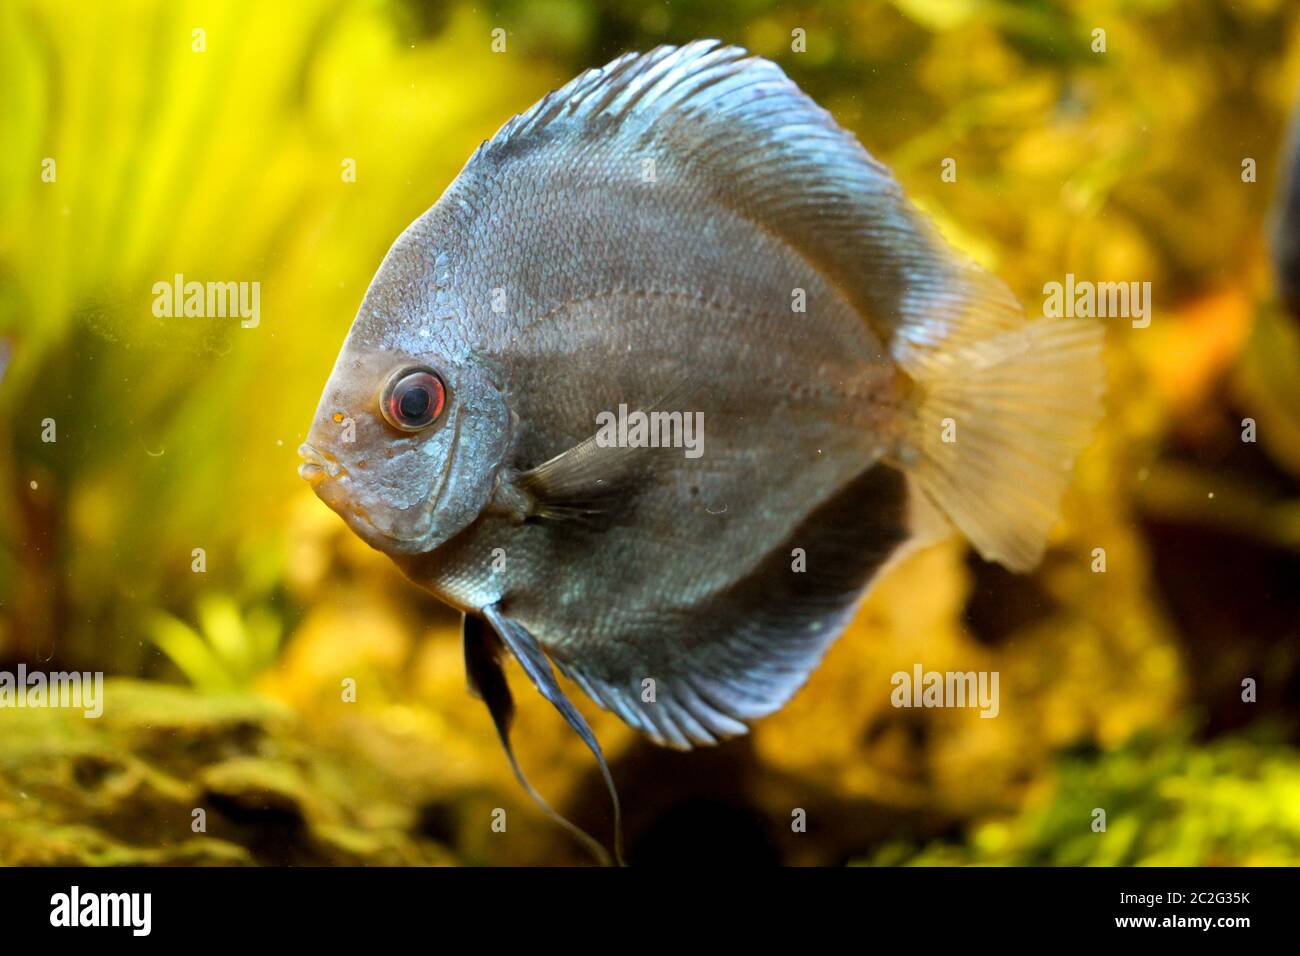 View, portrait of a discus fish in aquarium Stock Photo